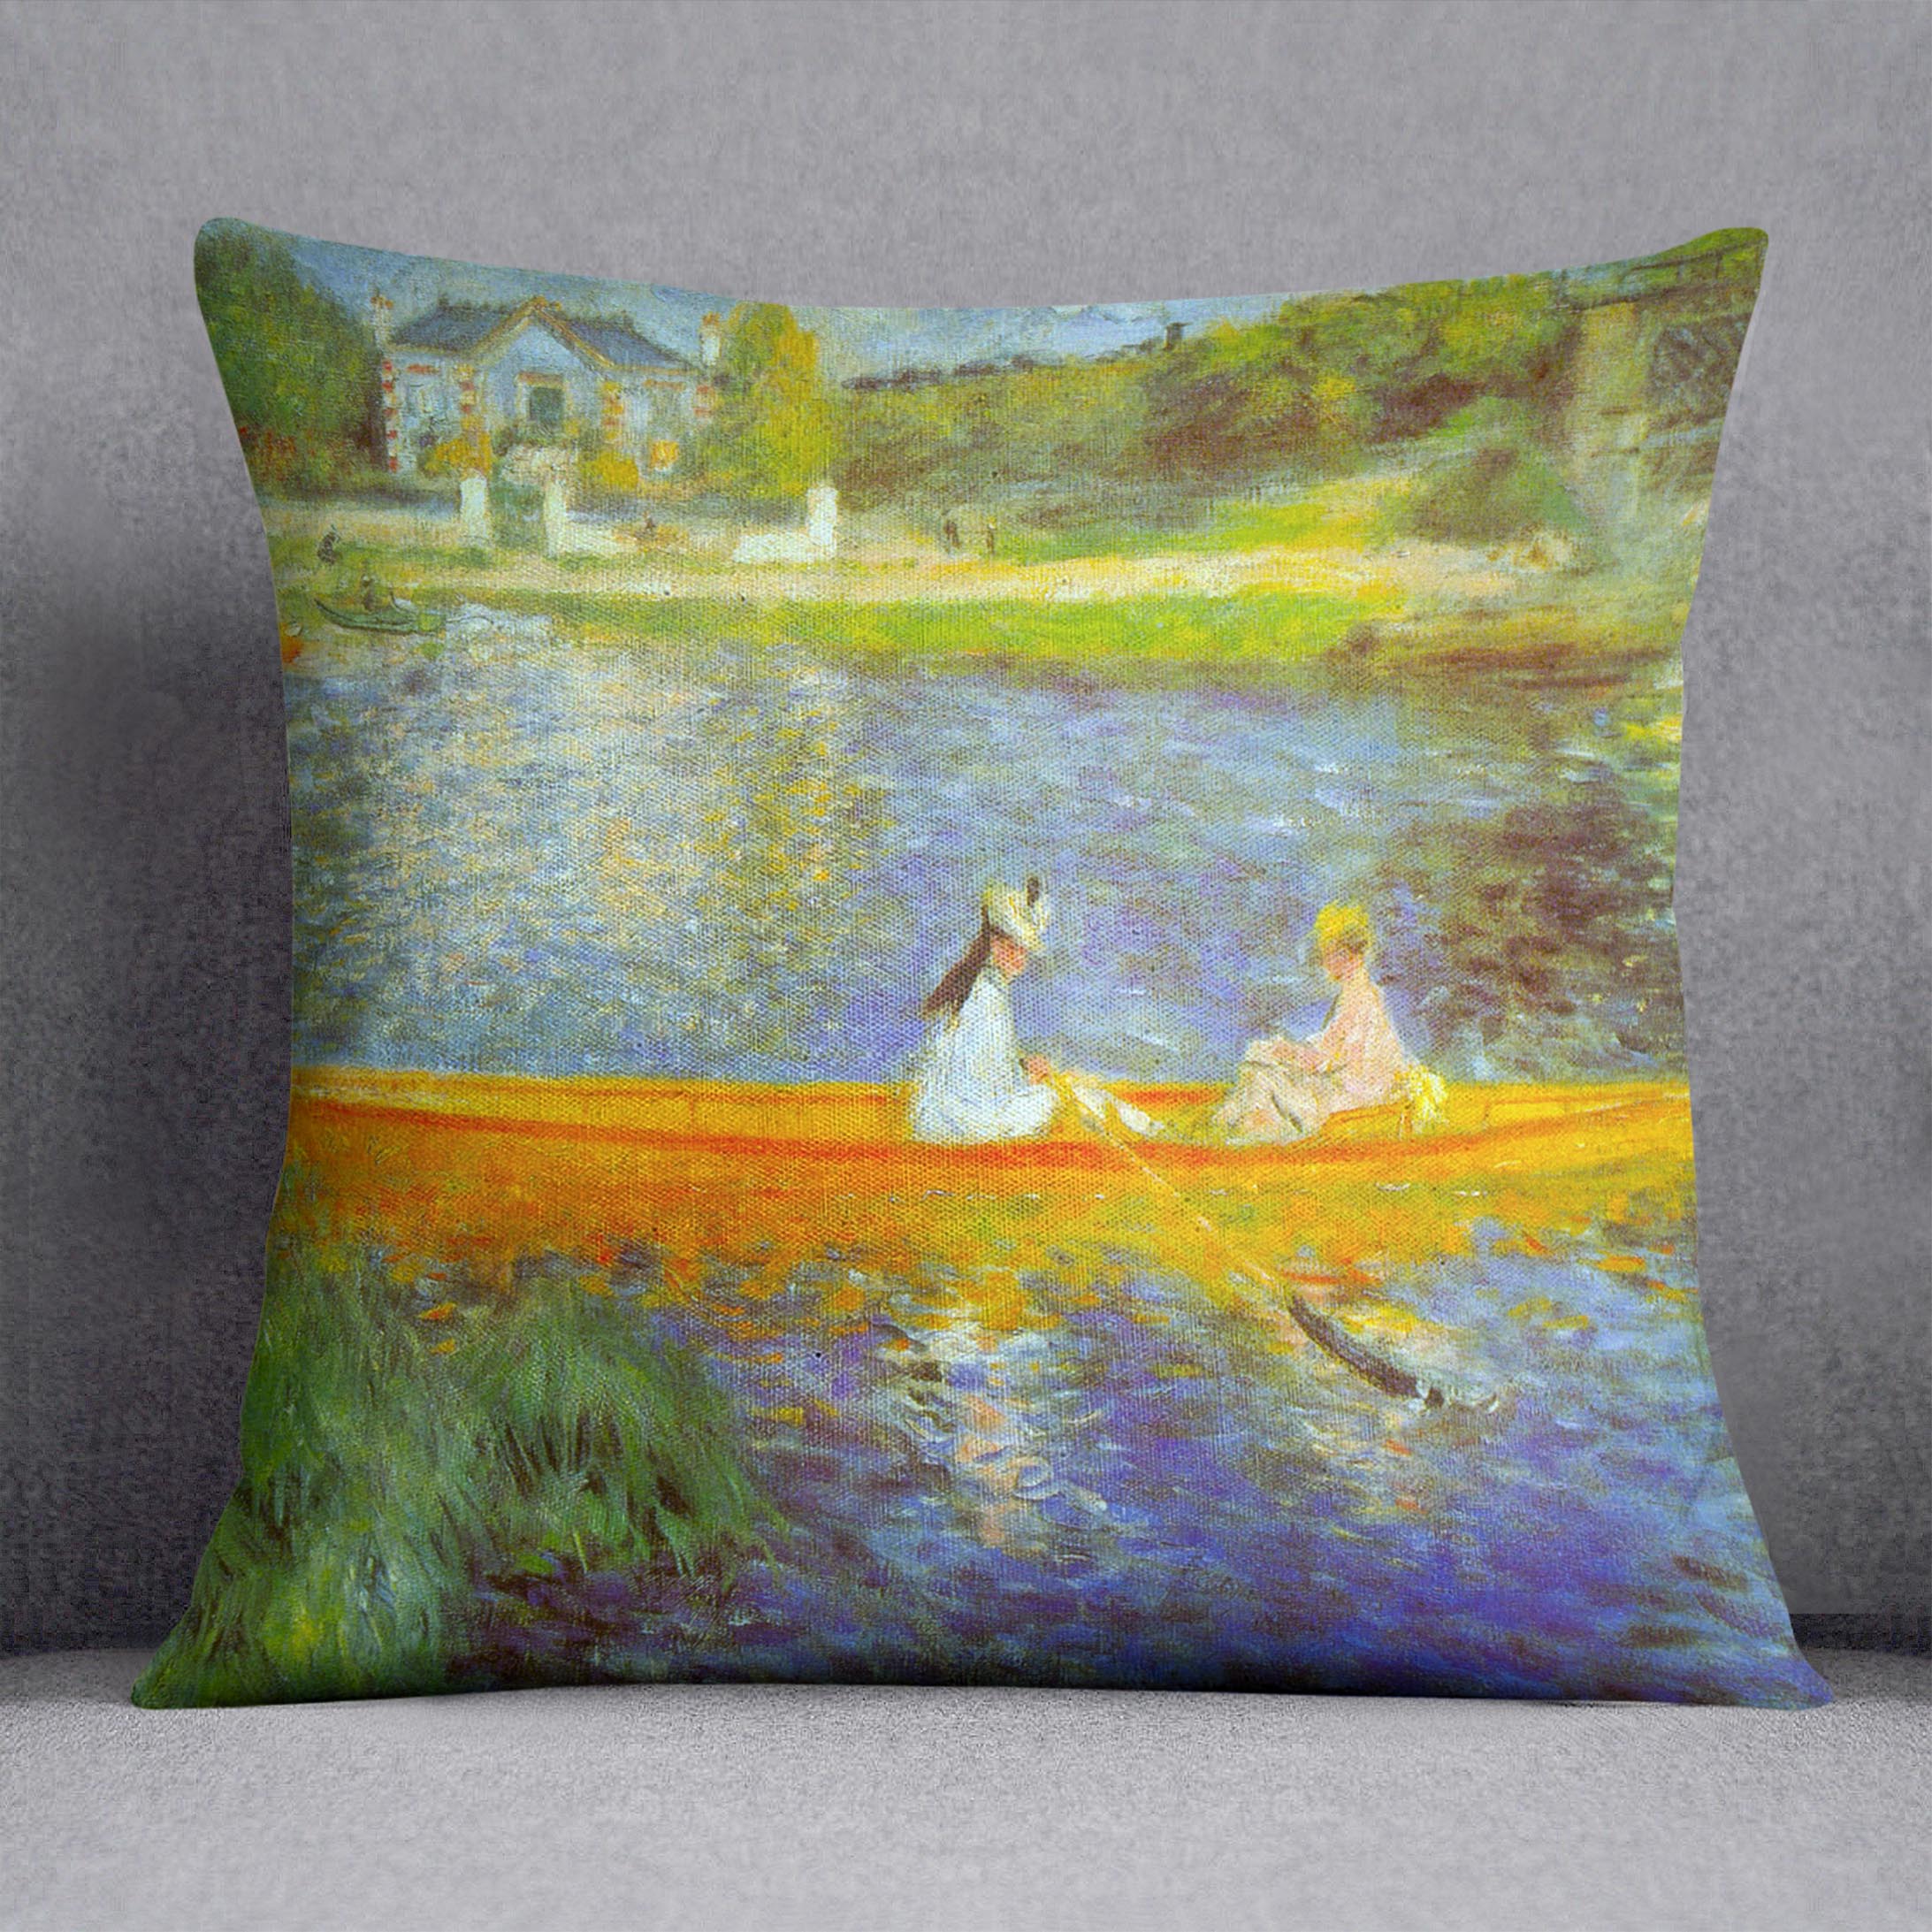 The Seine by Renoir Cushion